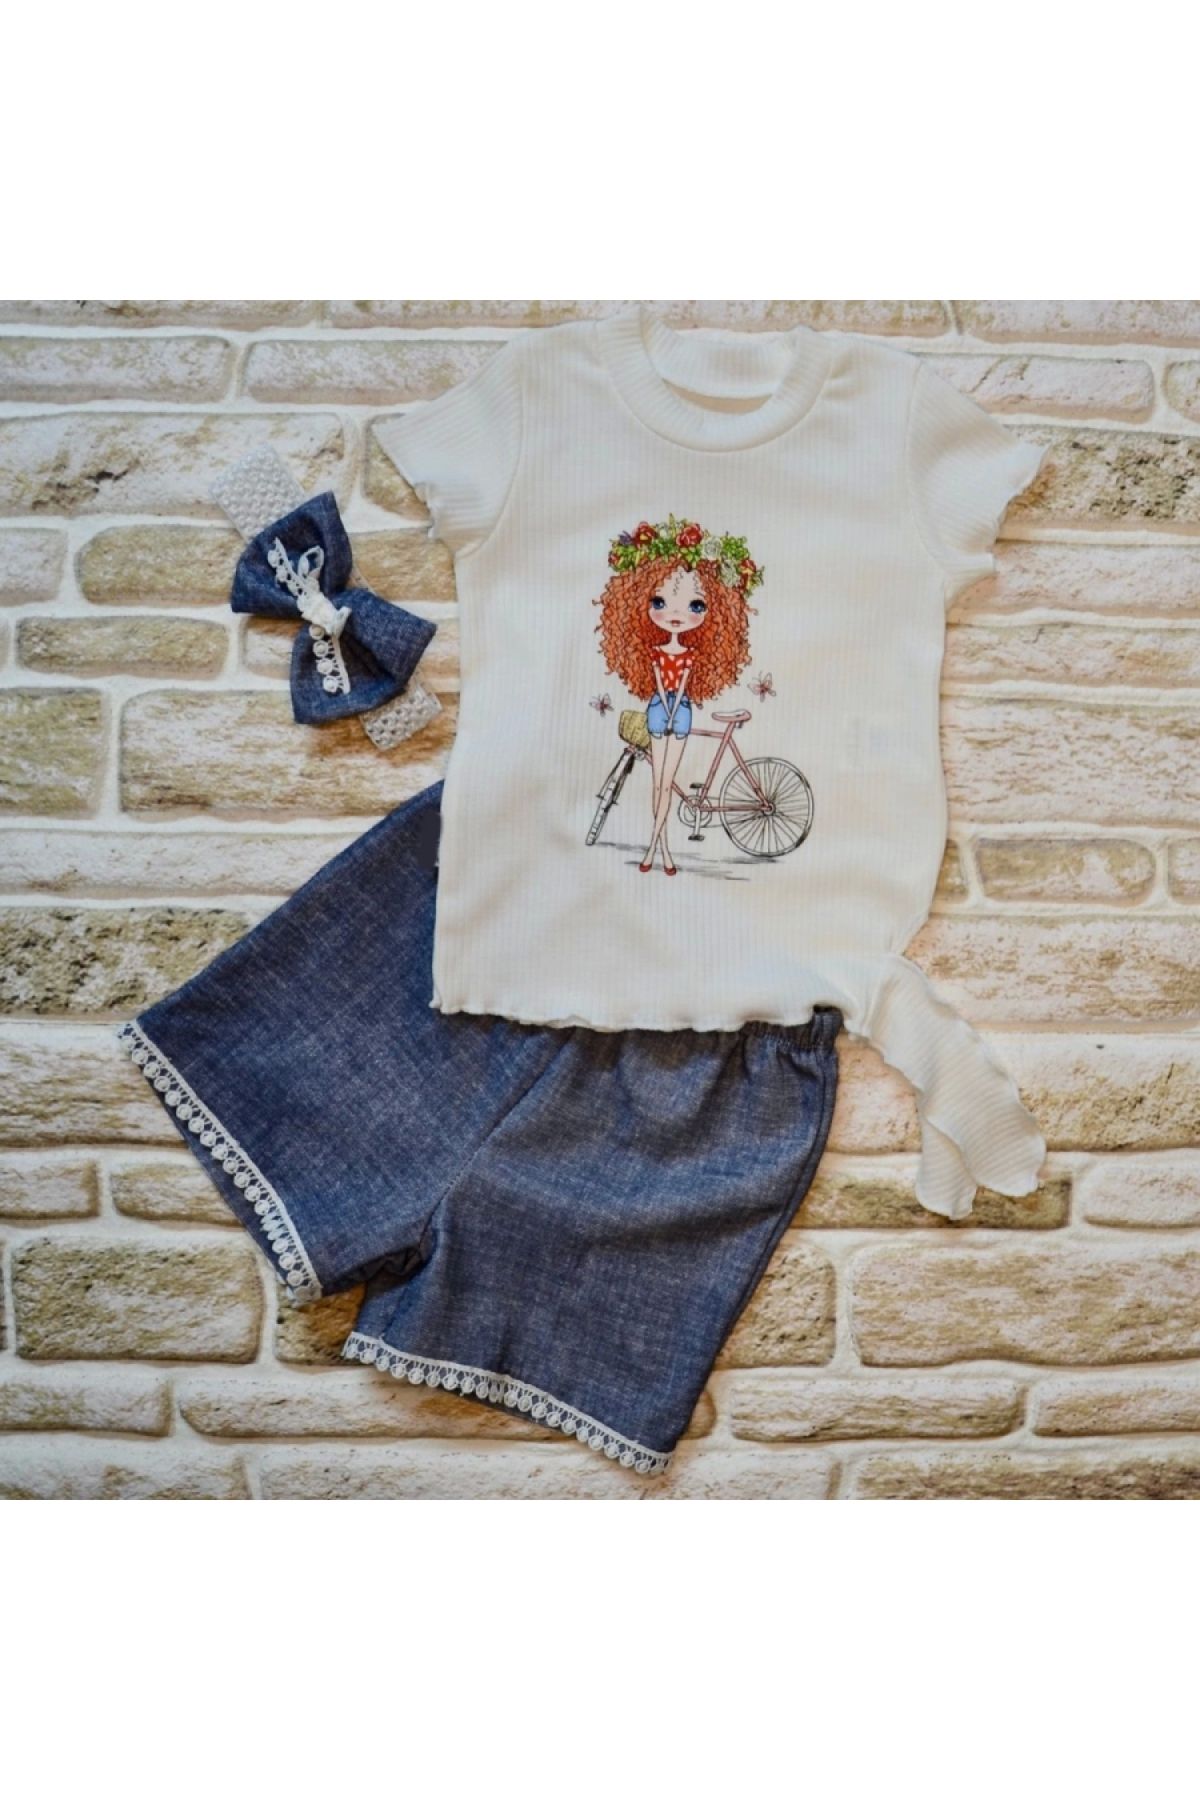 Narnuga Bisikletli Kız Baskılı Bandanalı Kot Desenli Şort Kısa Kollu Tişört 3lü Kız Bebek Takımı